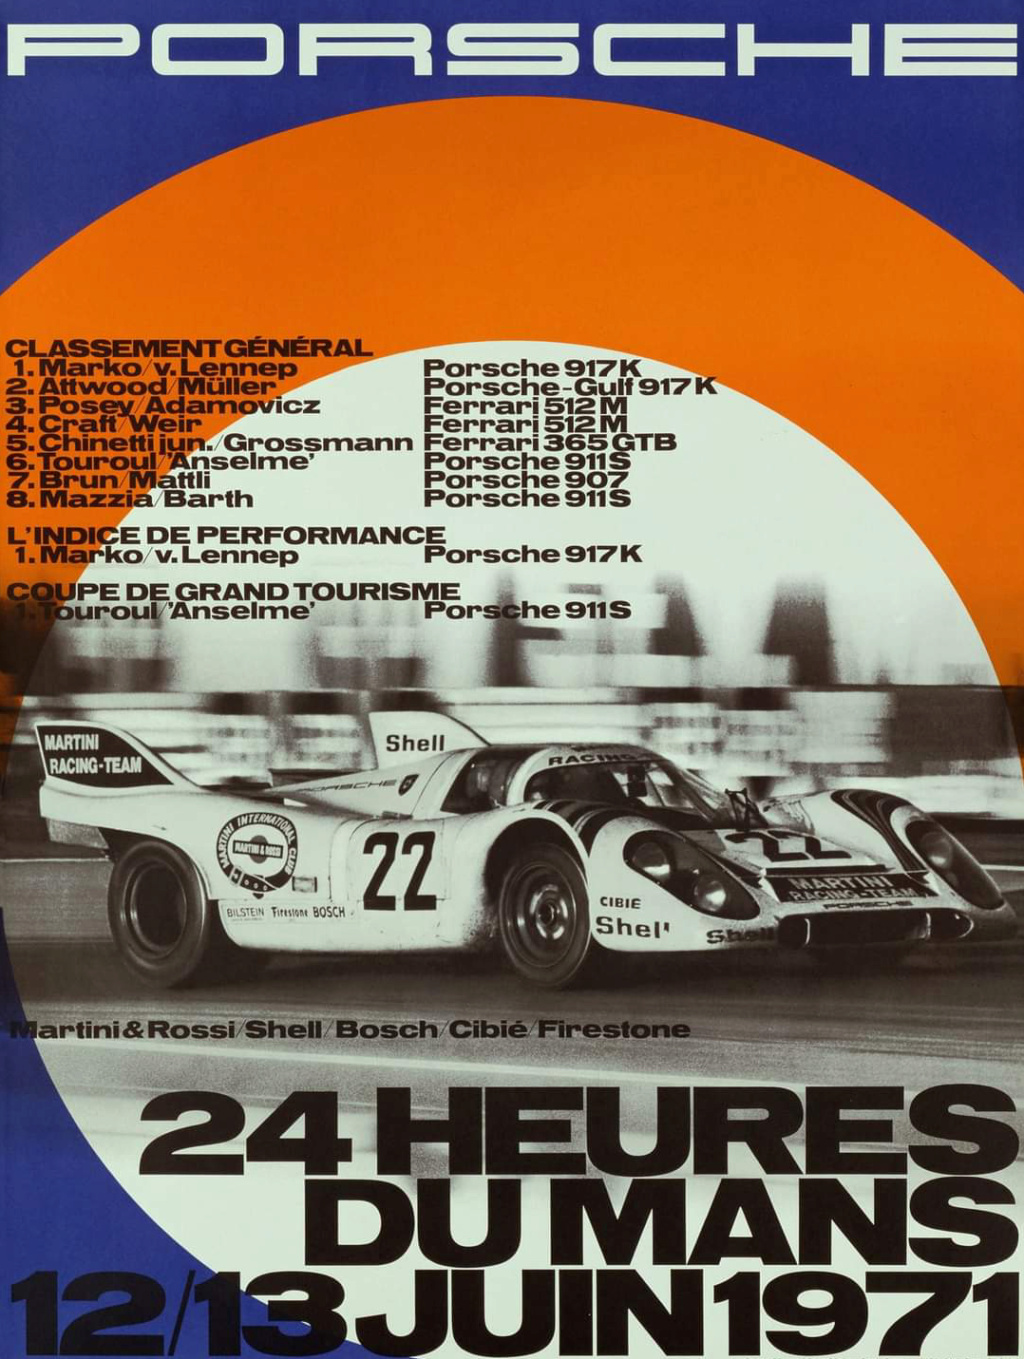 Affiches Porsche dans la course Automobile - Page 4 Scree905